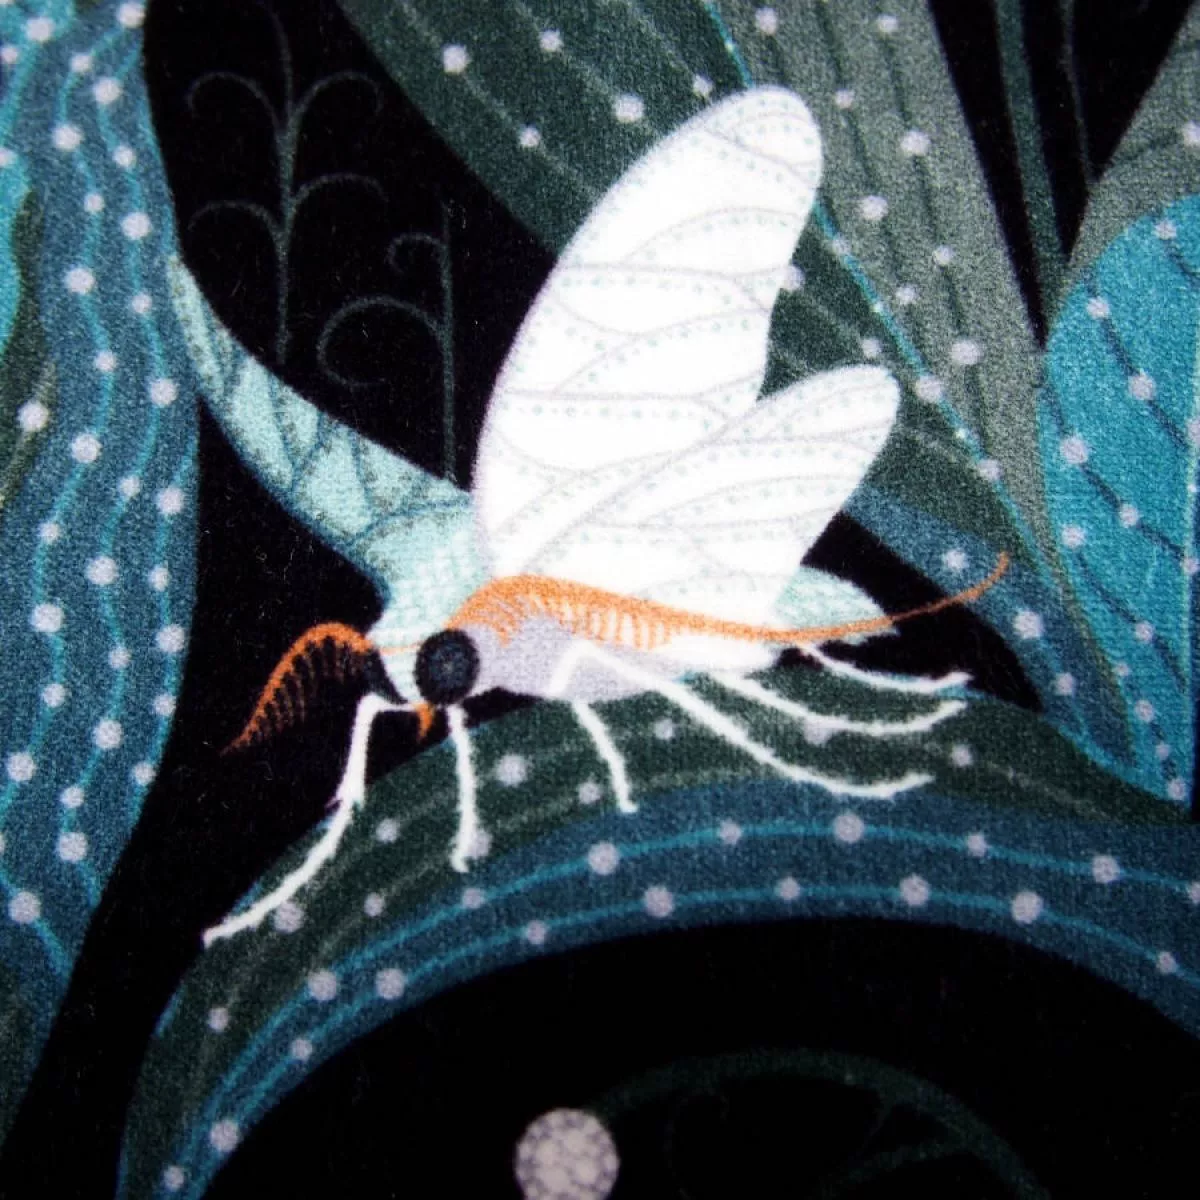 Sofakissen-Bezug "Lily of the Valley" (dunkel) aus Baumwollsamt (50 x 50 cm)